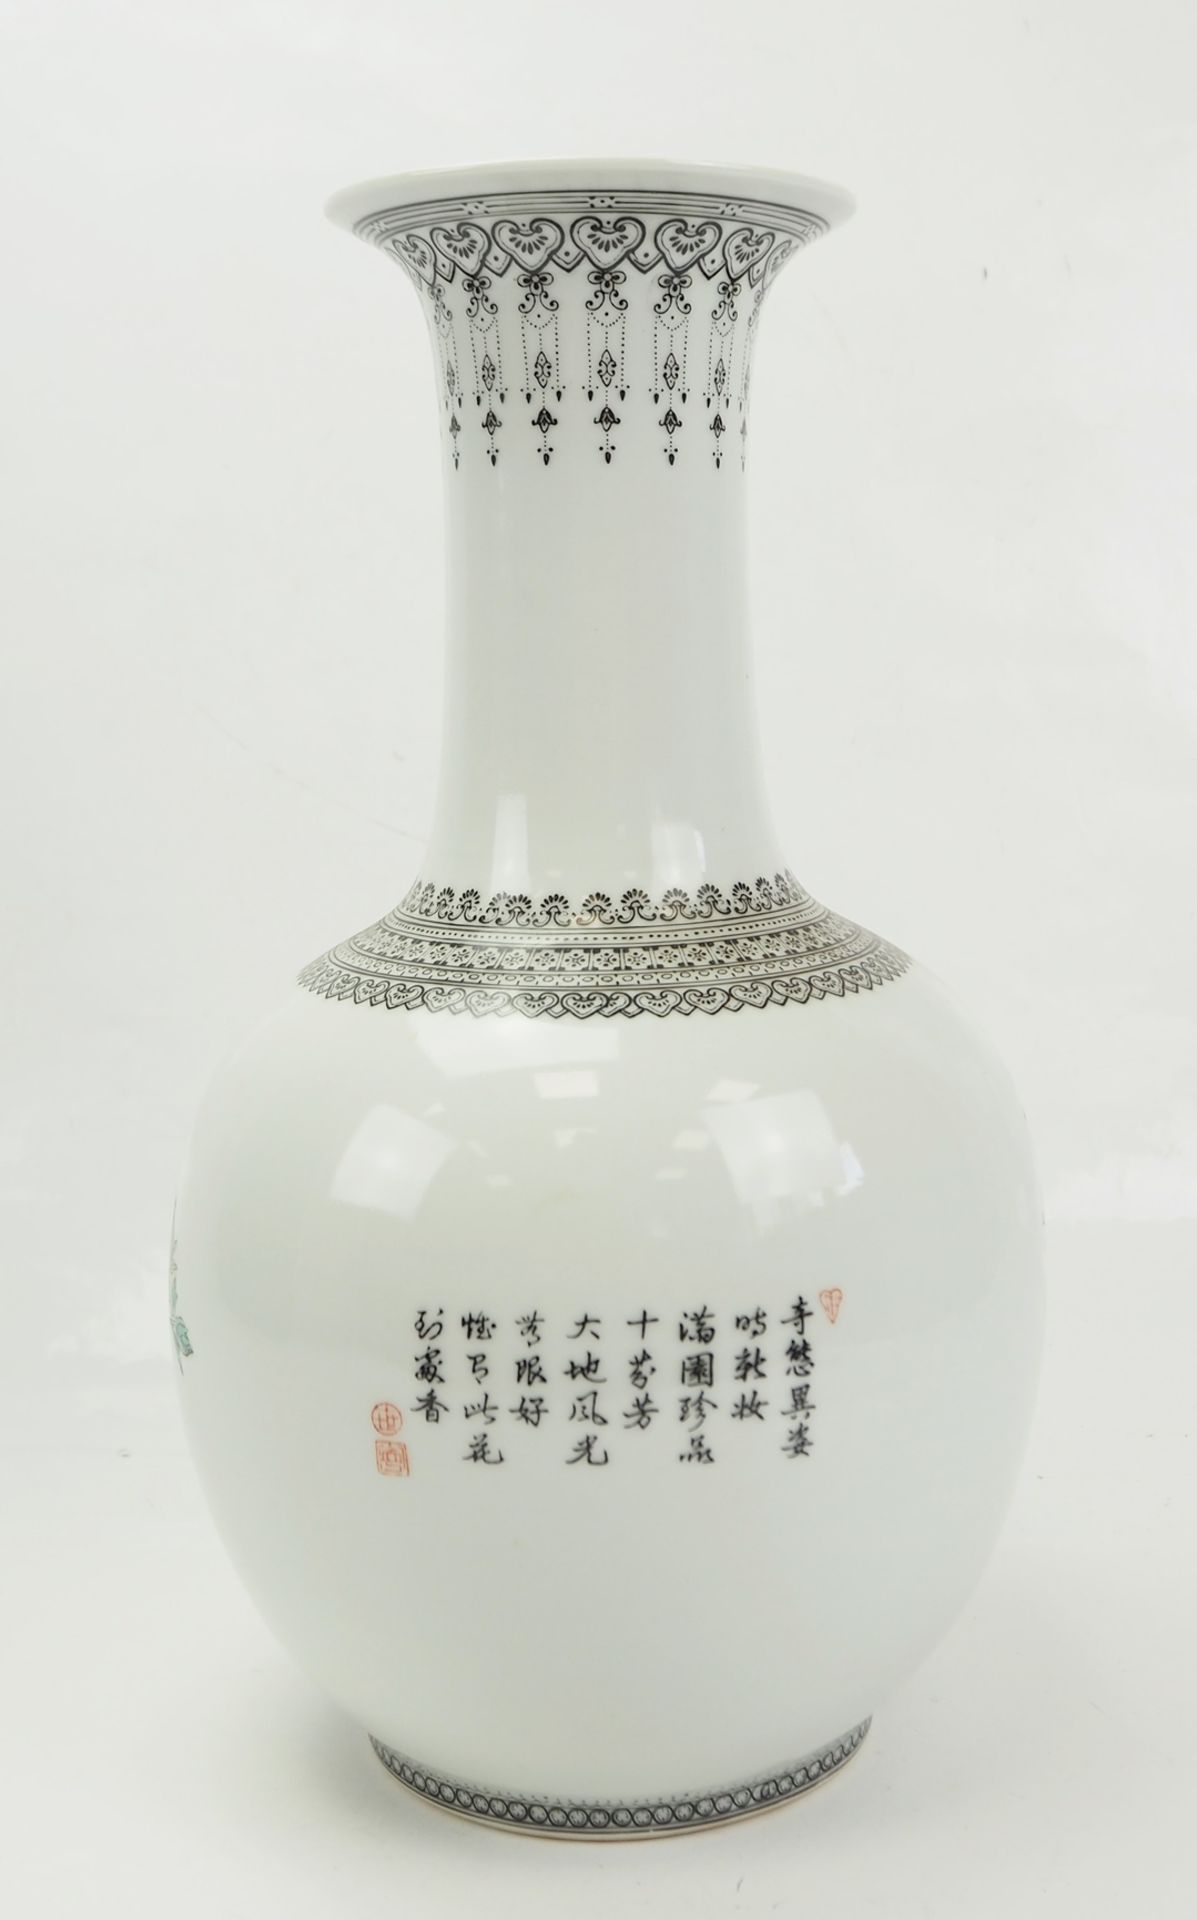 China: Vase. - Image 2 of 3